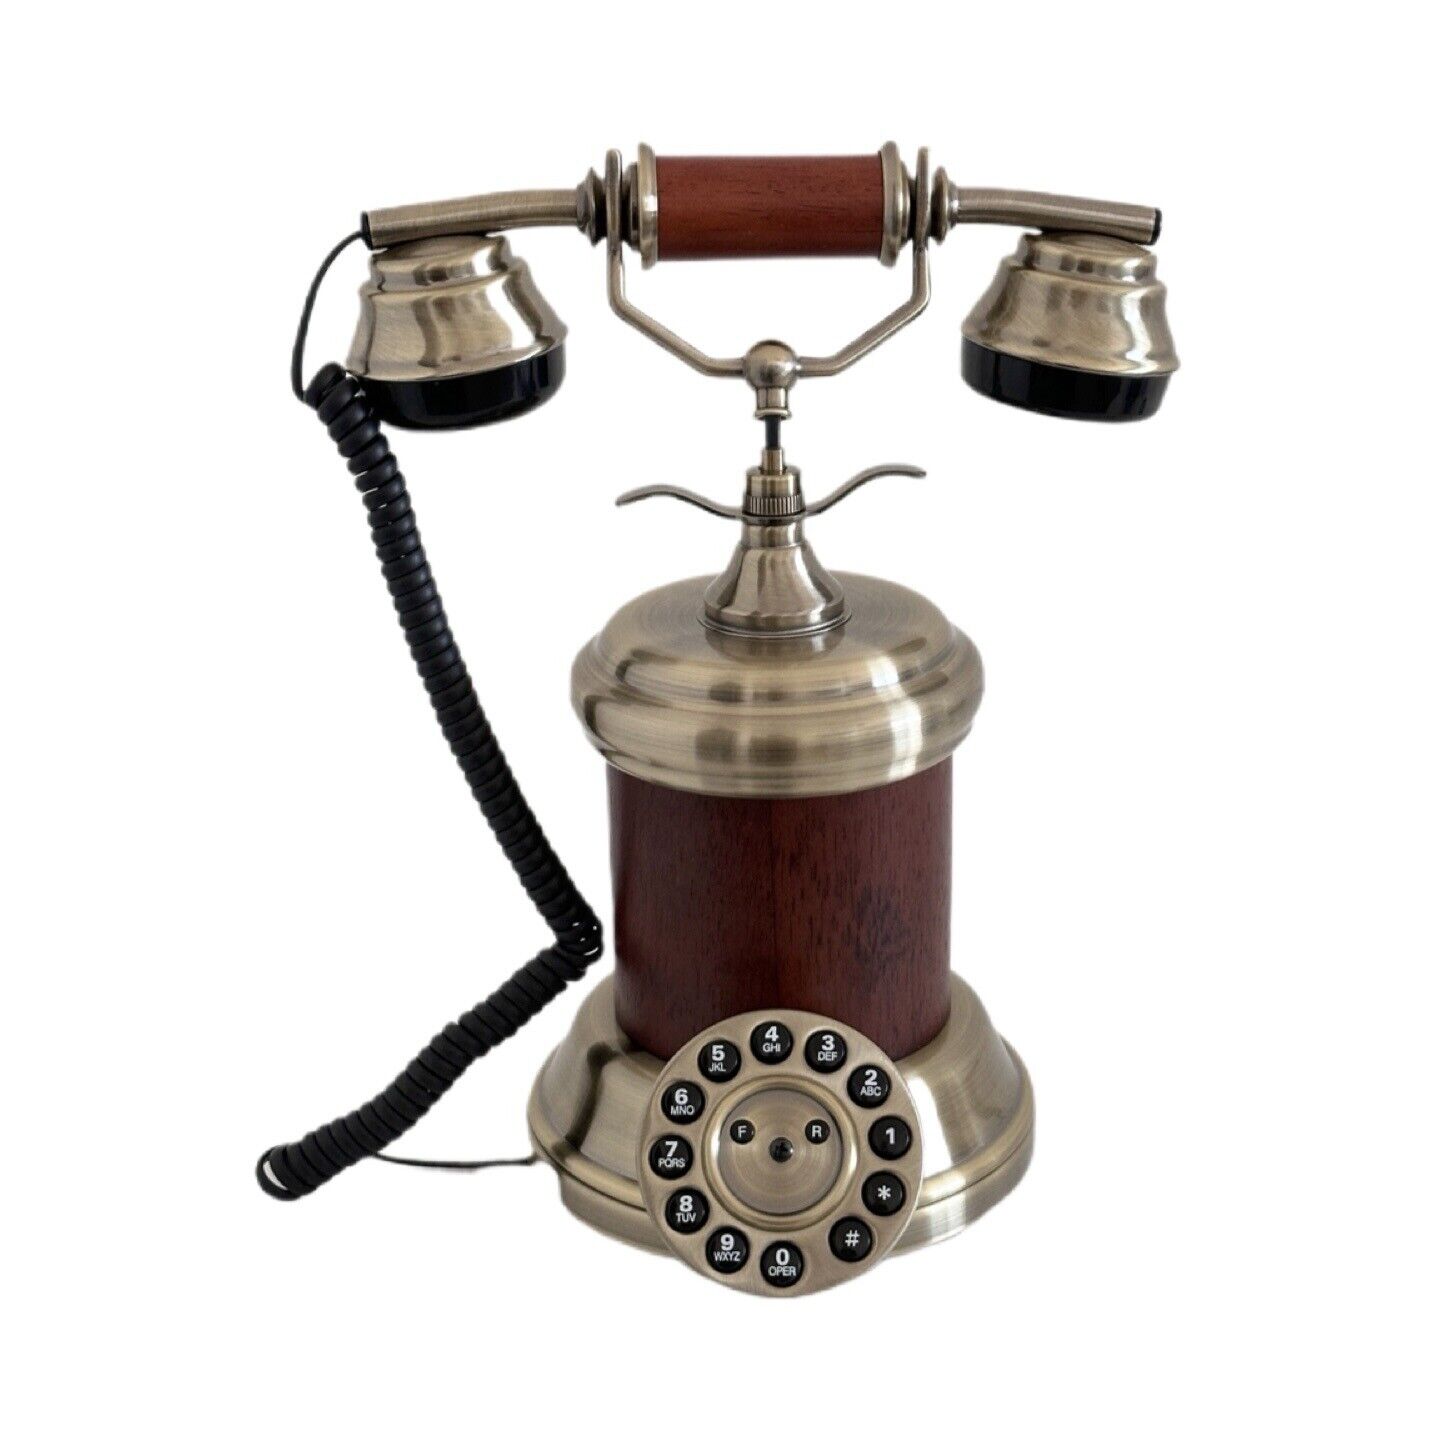 New Antique Style Cradle Telephone